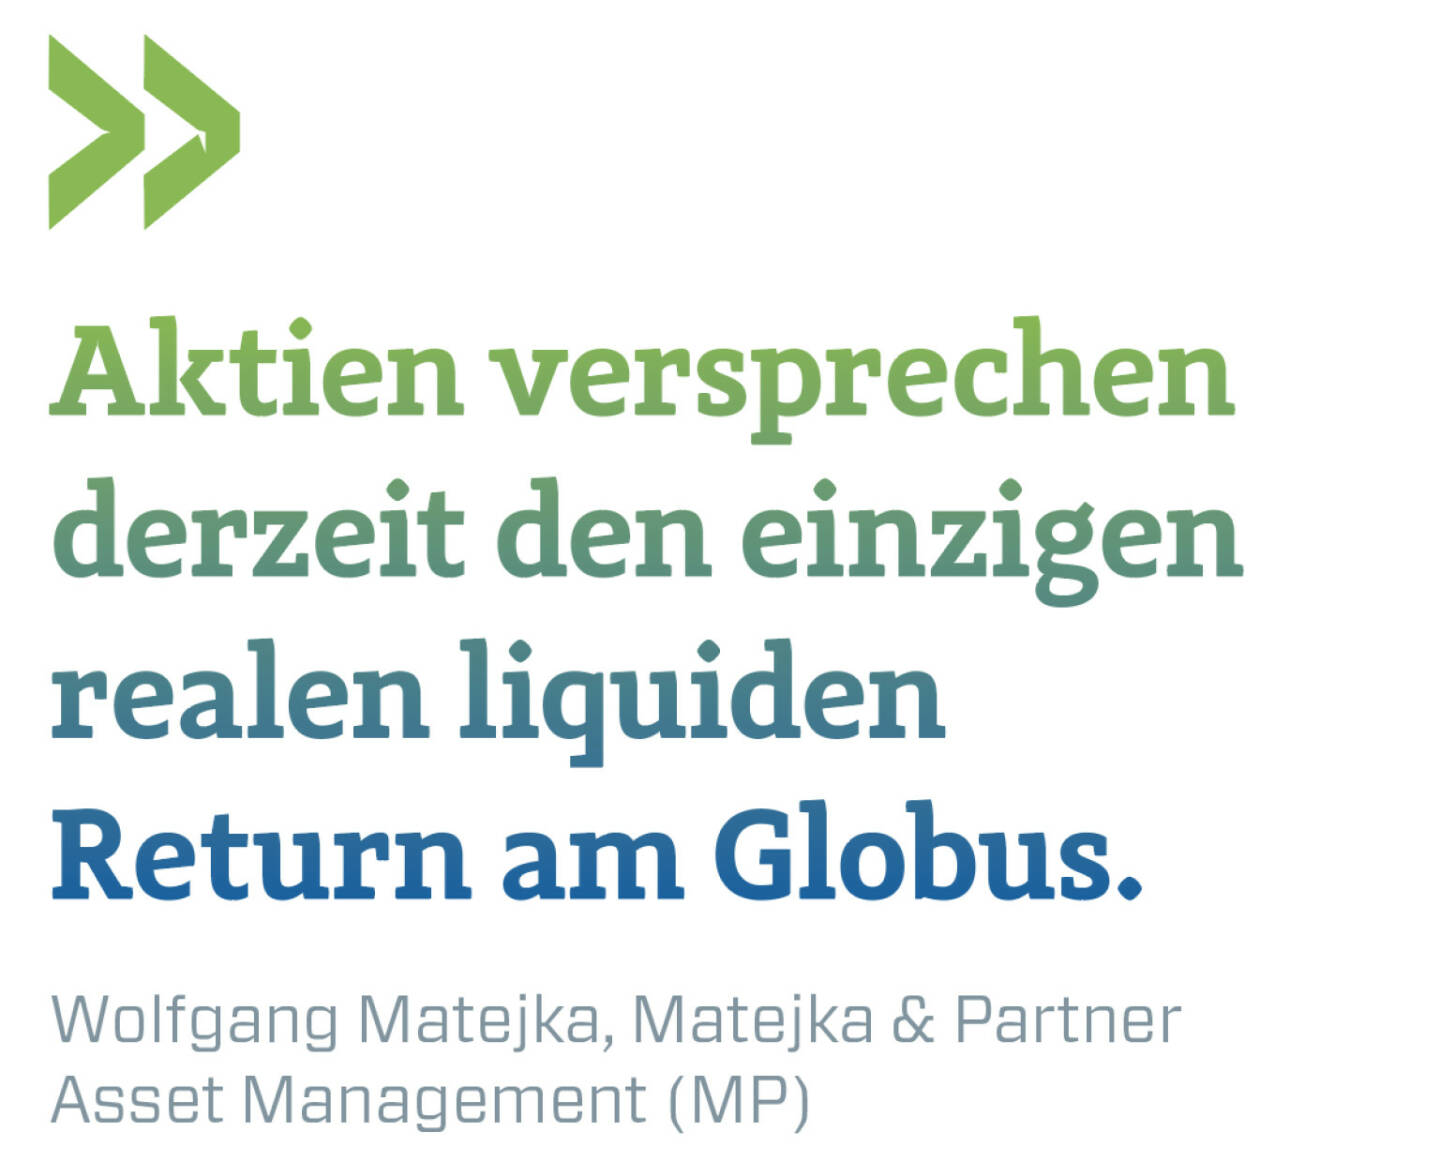 Aktien versprechen derzeit den einzigen realen liquiden Return am Globus.
Wolfgang Matejka, Matejka & Partner Asset Management (MP)